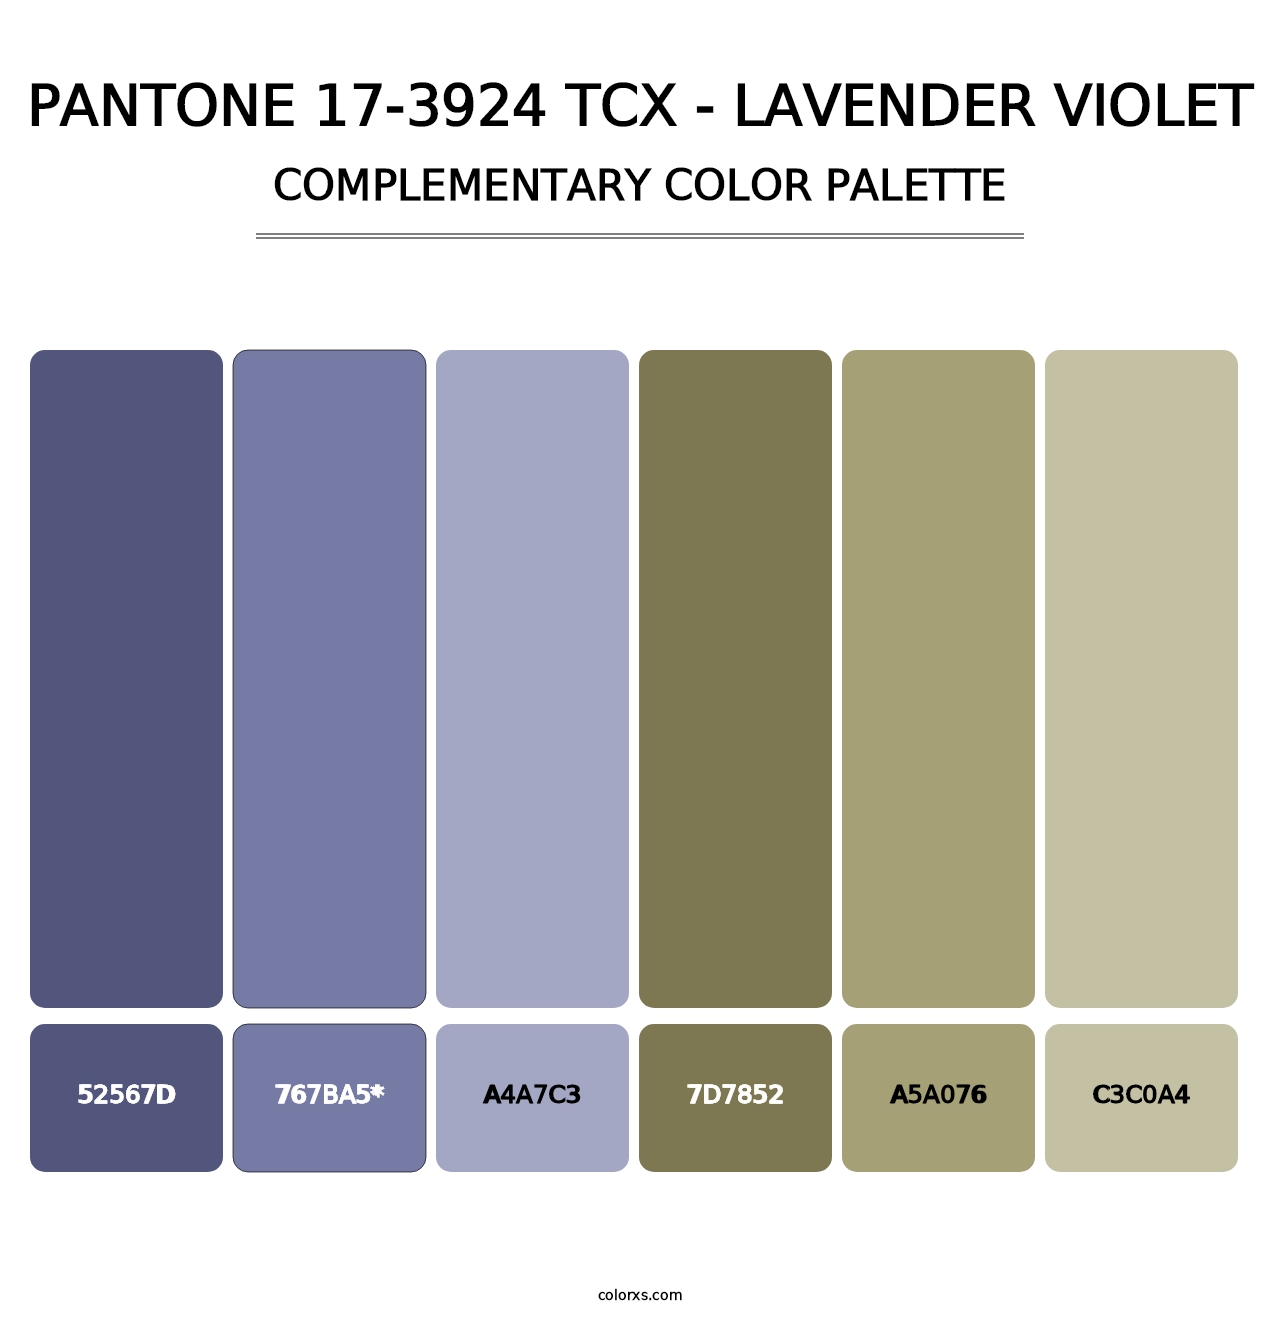 PANTONE 17-3924 TCX - Lavender Violet - Complementary Color Palette